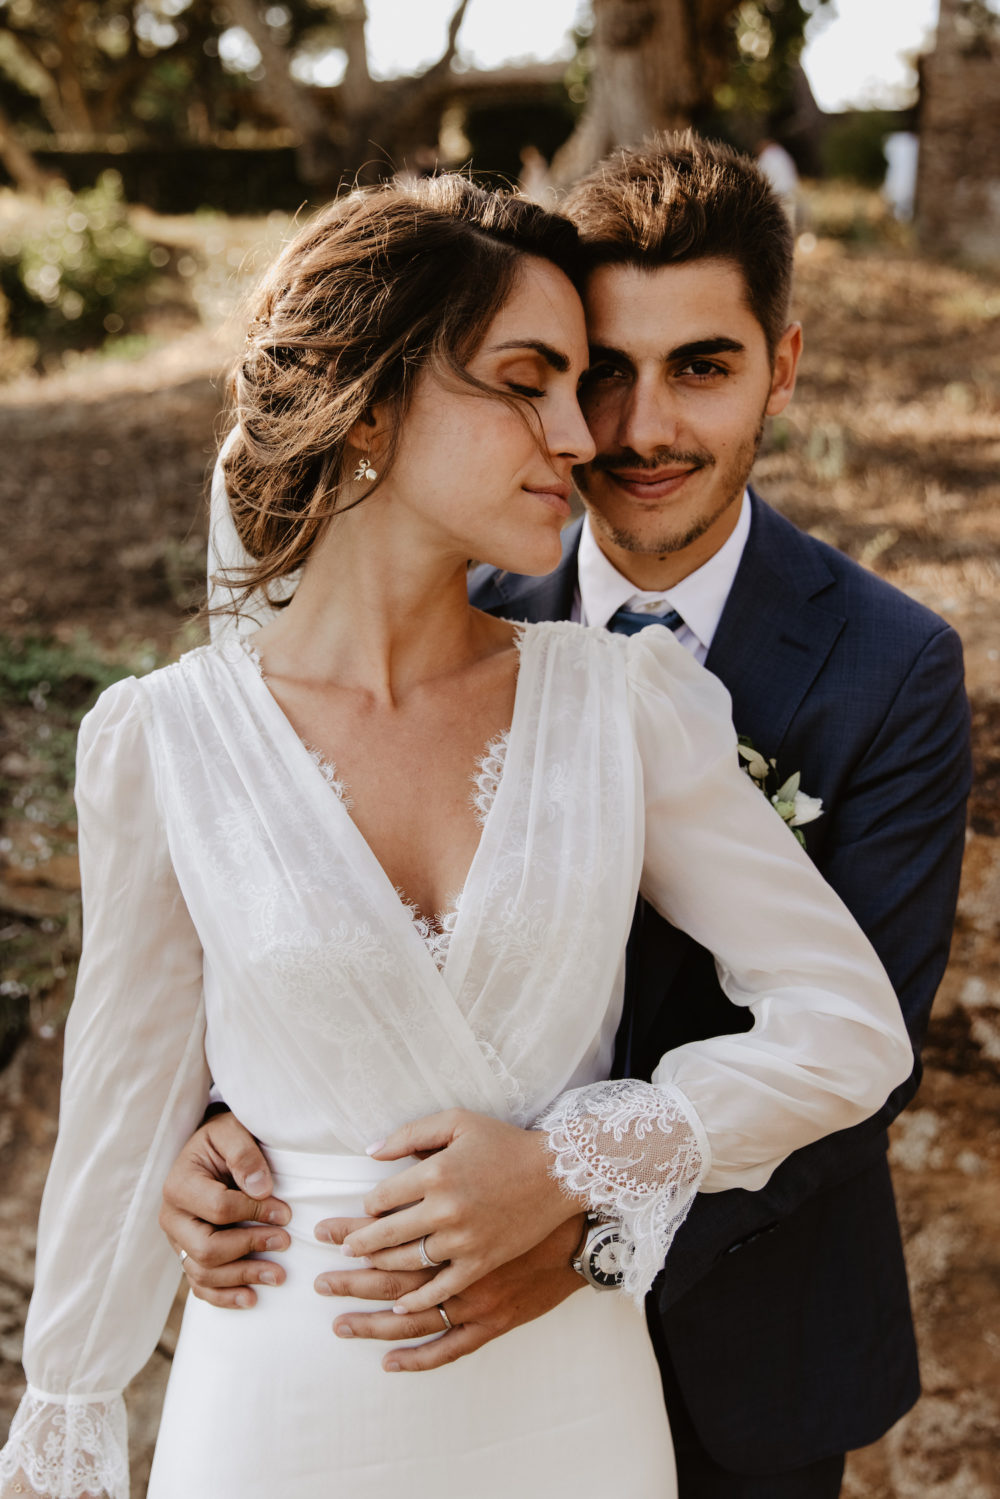 Mariage d'Automne au Lavandou - Crédit photos Alchemia Wedding